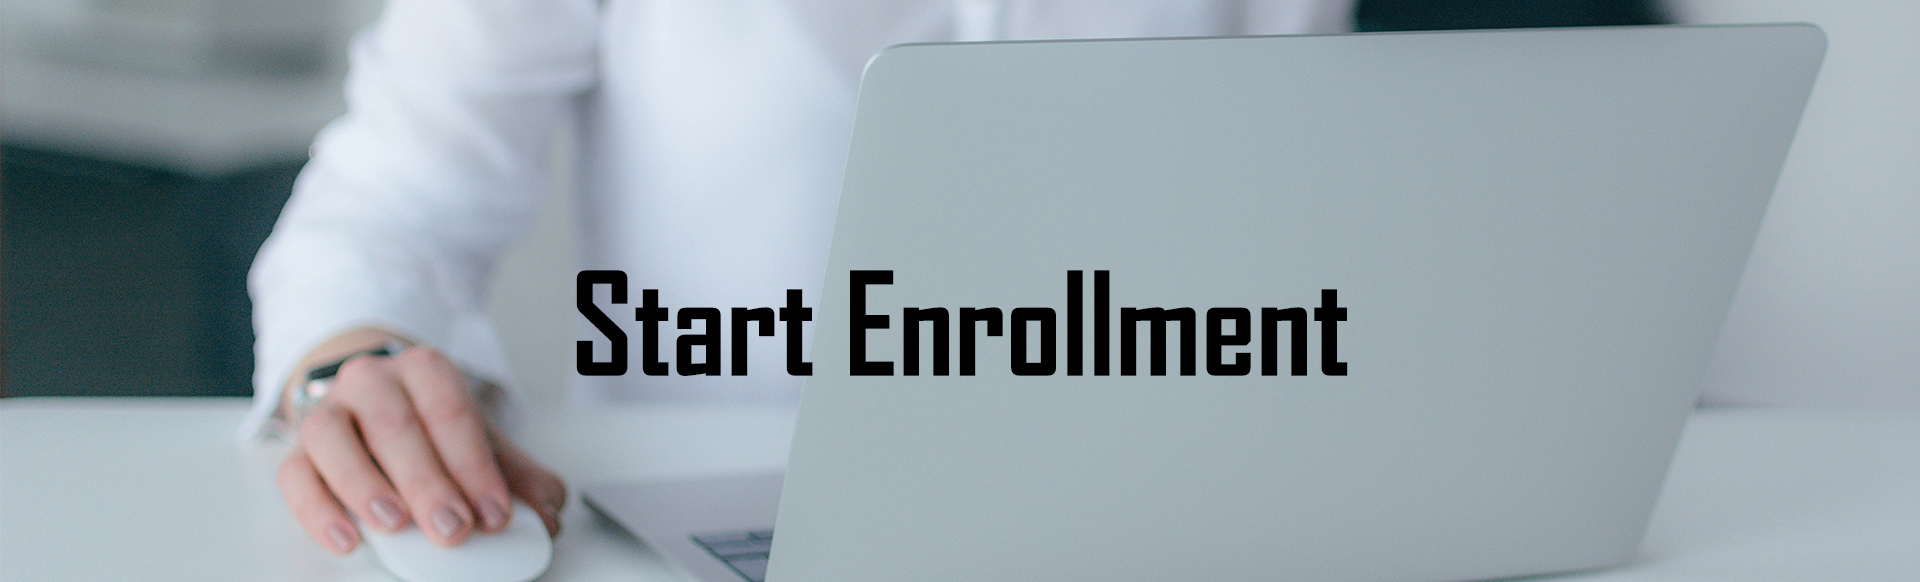 Start Enrollment